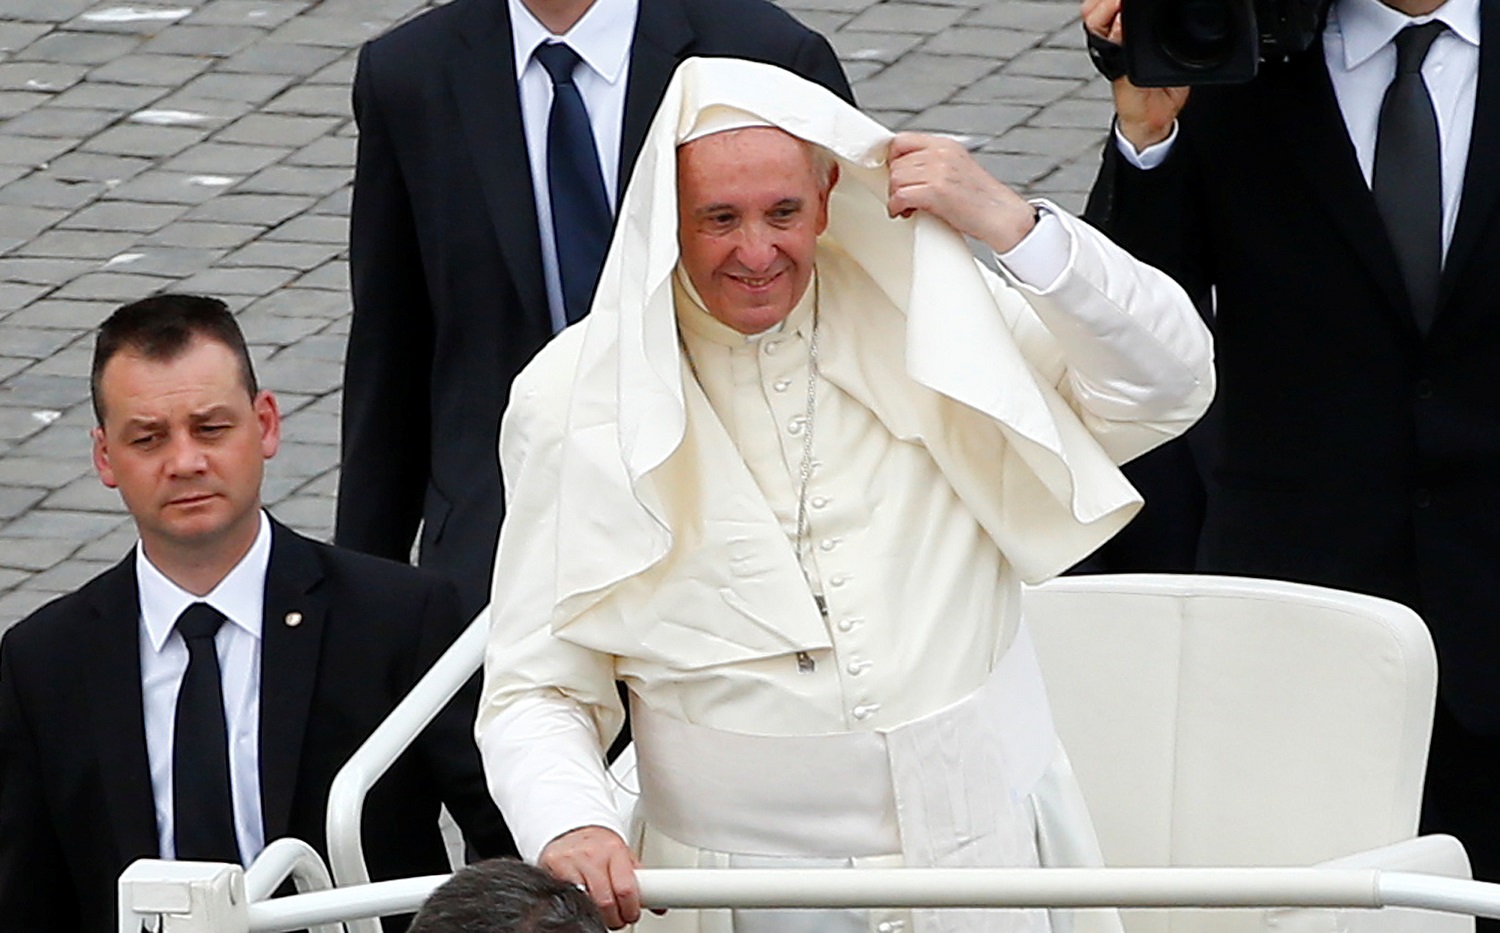 El Papa viajará a Colombia para promover la reconciliación y la paz